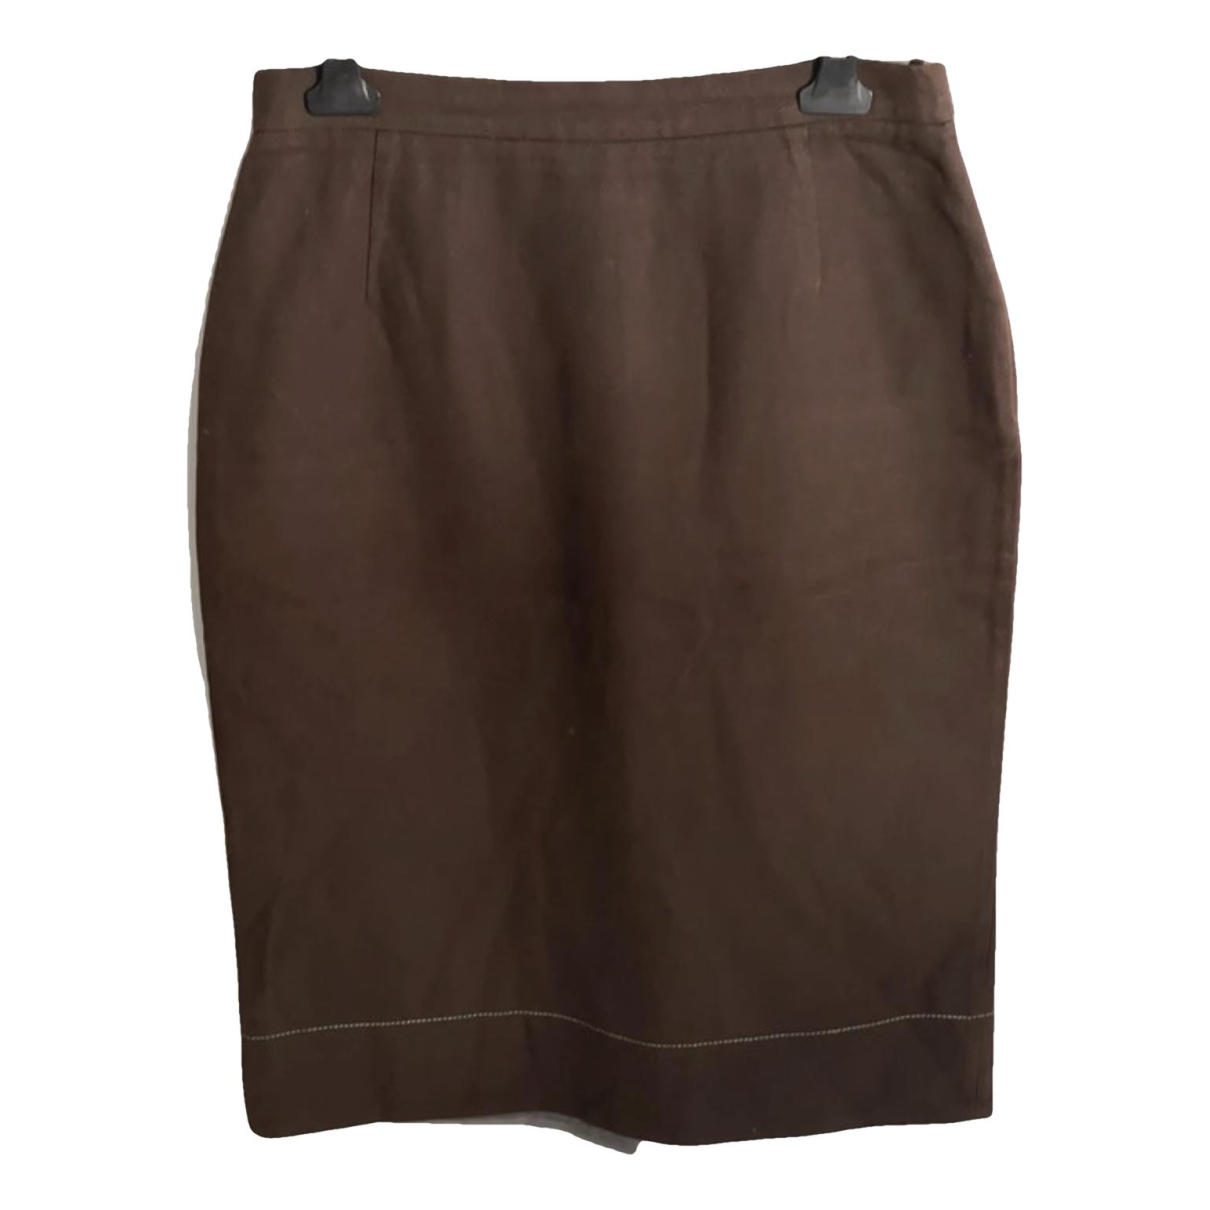 Brown Wool Skirt Suit